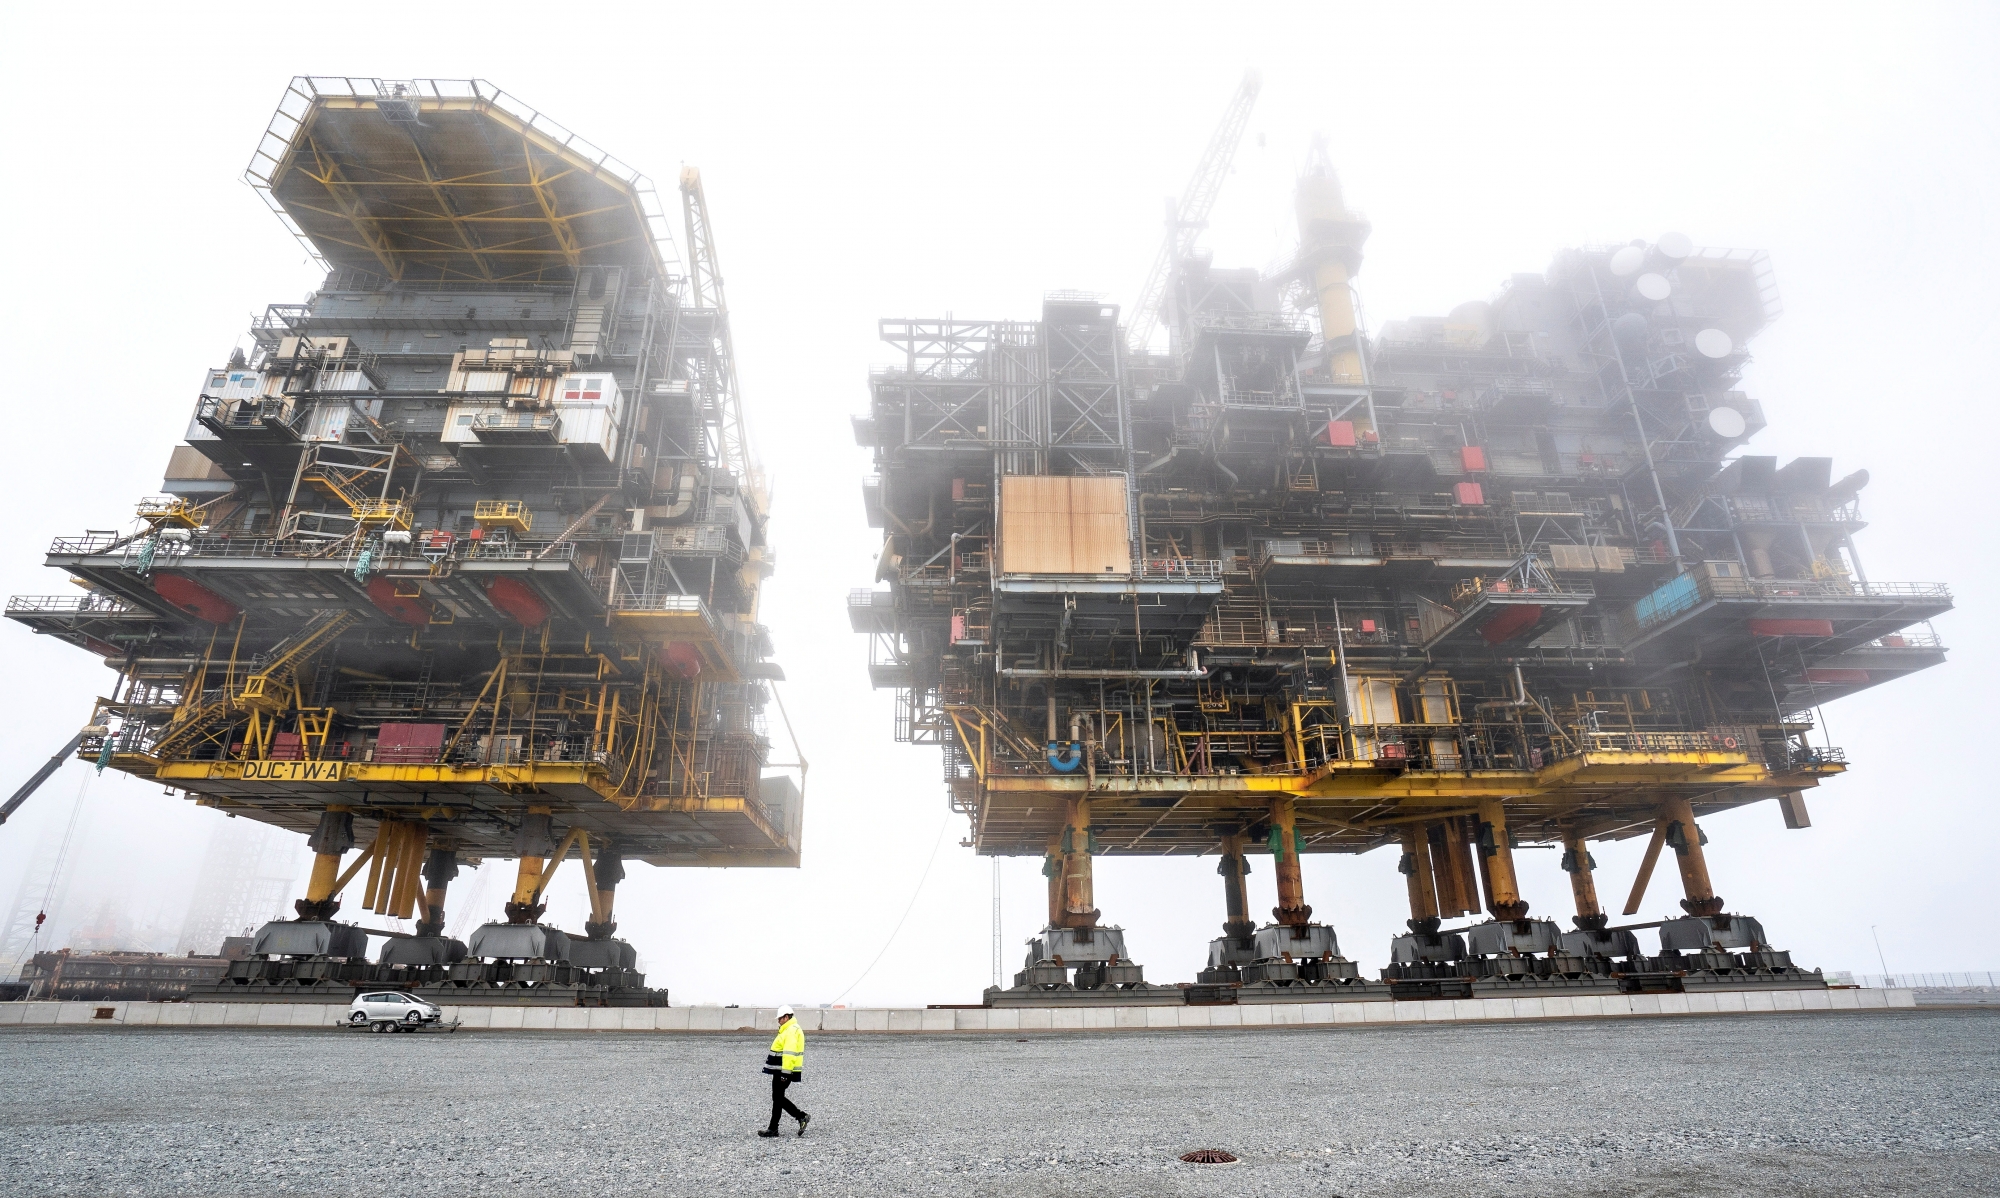 Le travail de recyclage des plates-formes pétrolières de Tyra, ici au port de Frederikshavn, sera le plus grand projet de recyclage offshore de l’histoire du Danemark.